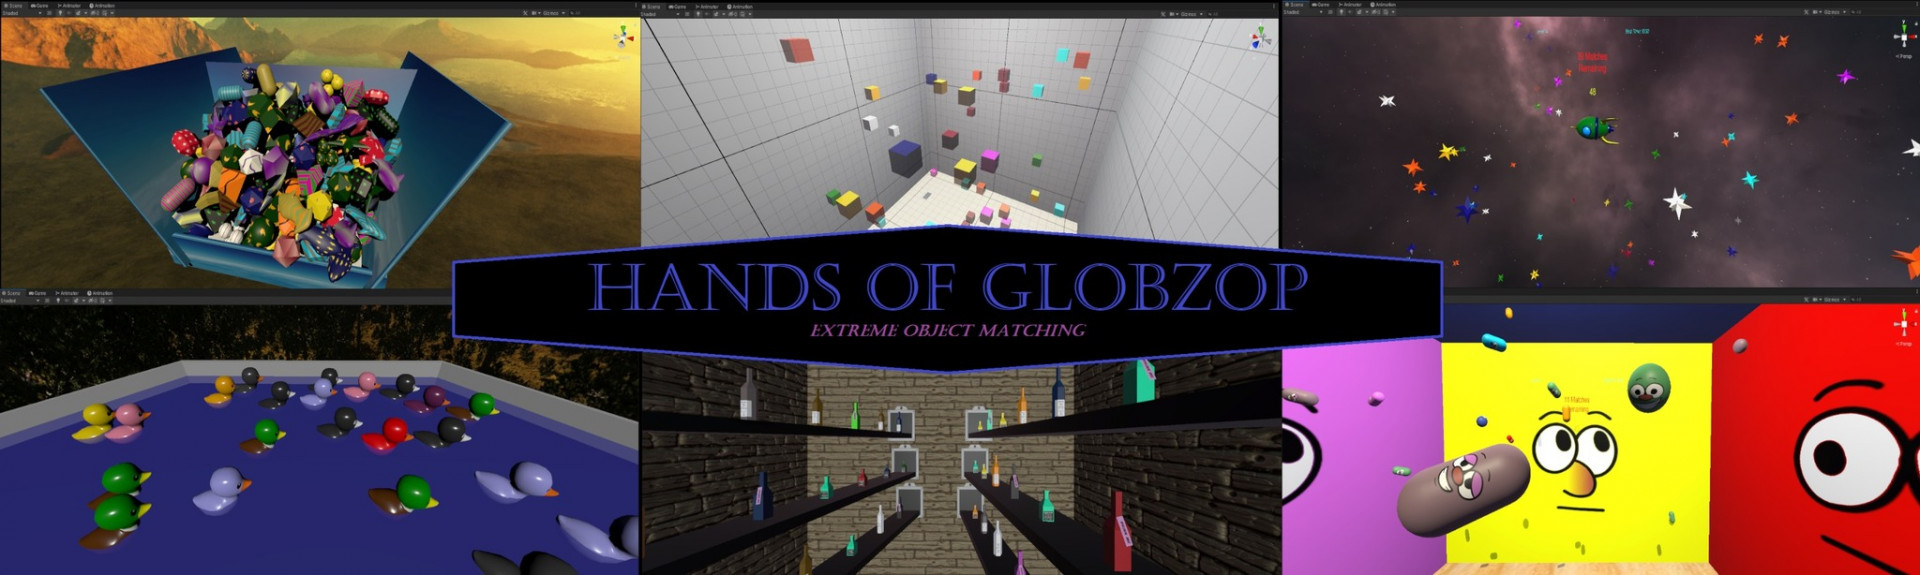 Hands of Globzop